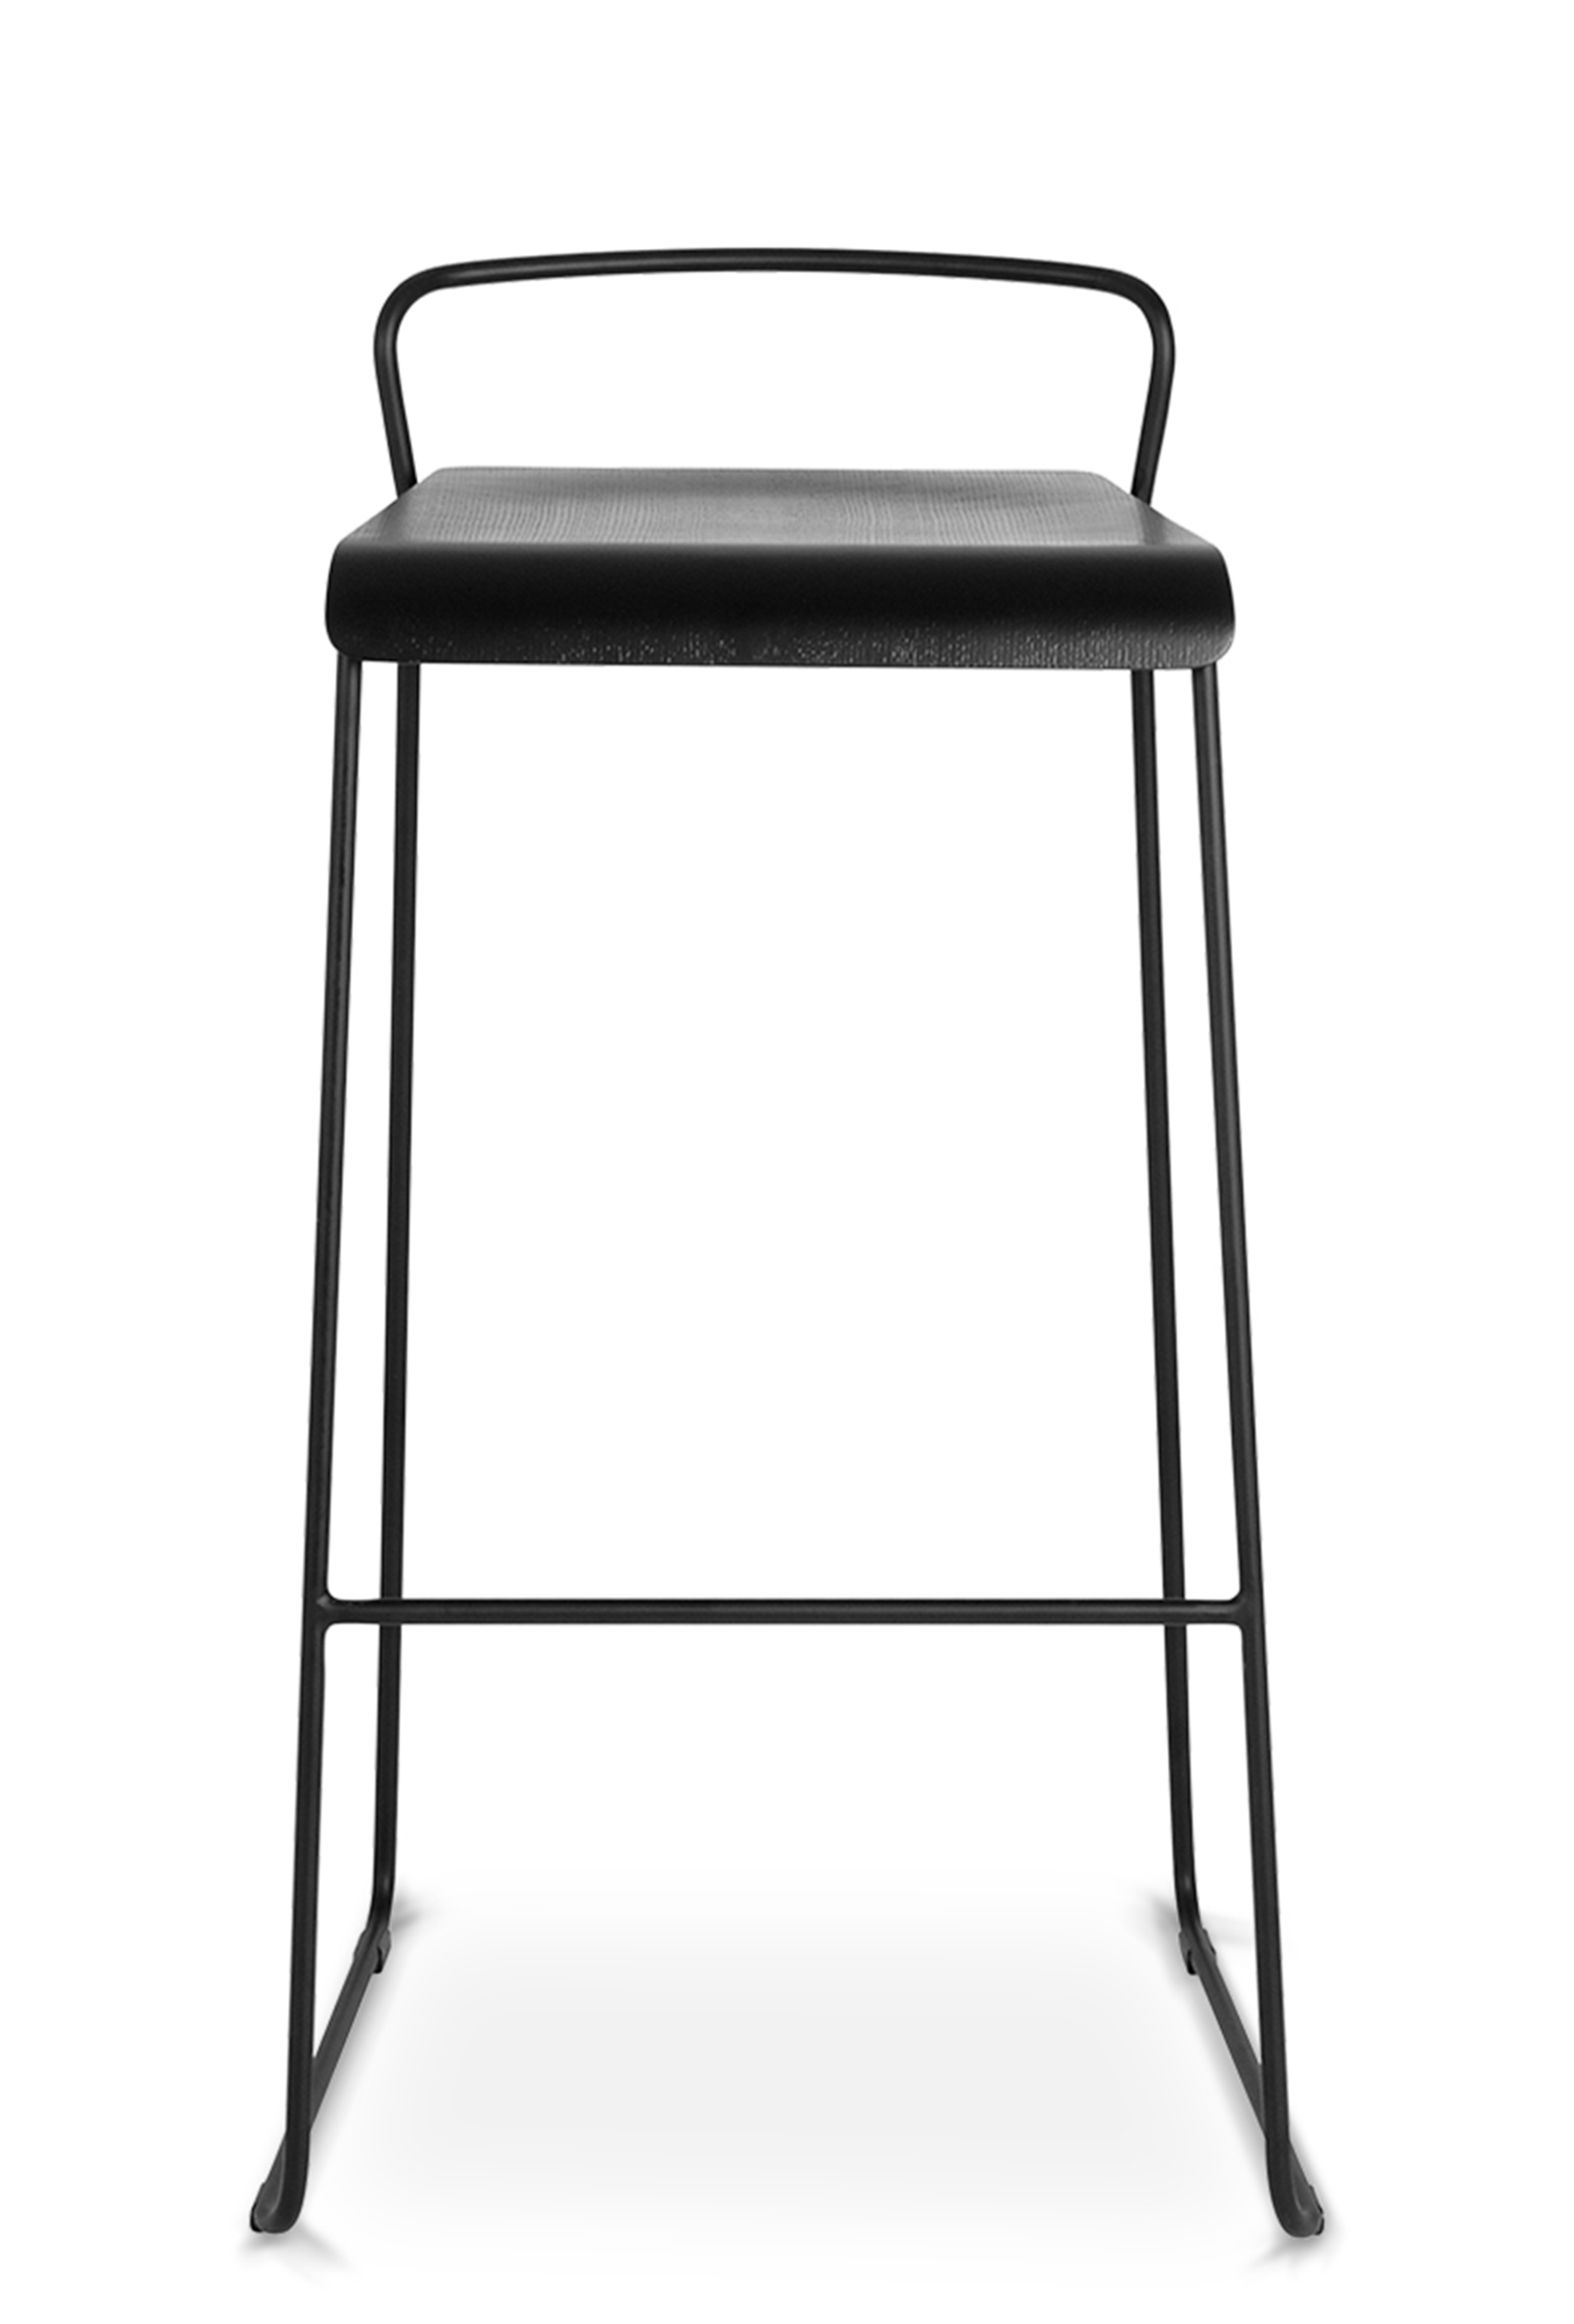 WS - Transit high stool - Black ash (Front)